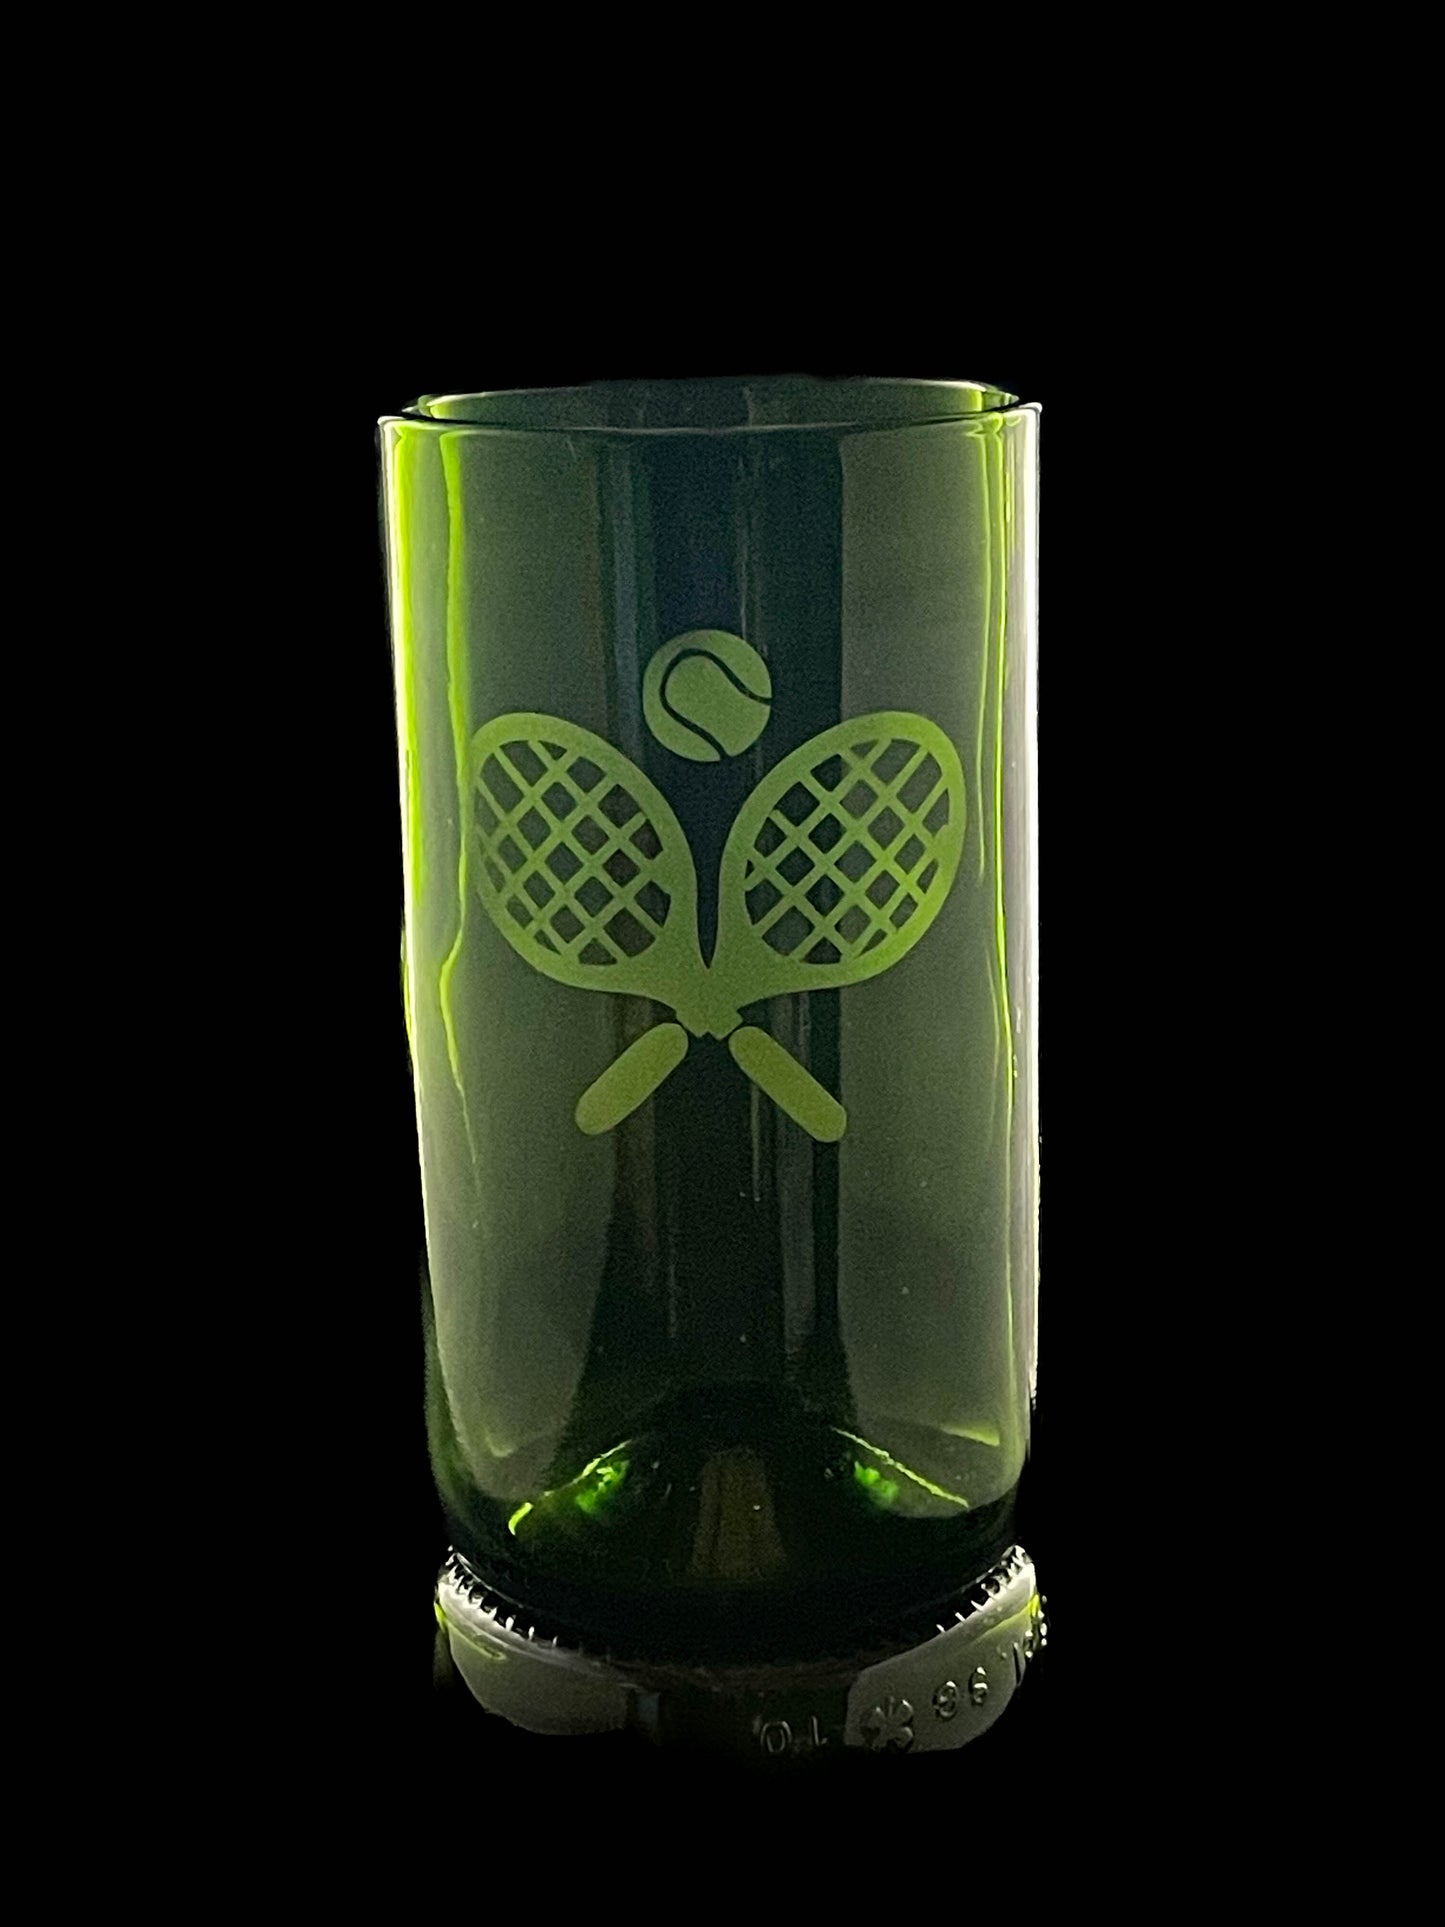 Tennis Wine Bottle Drinking Glasses - Set of 2